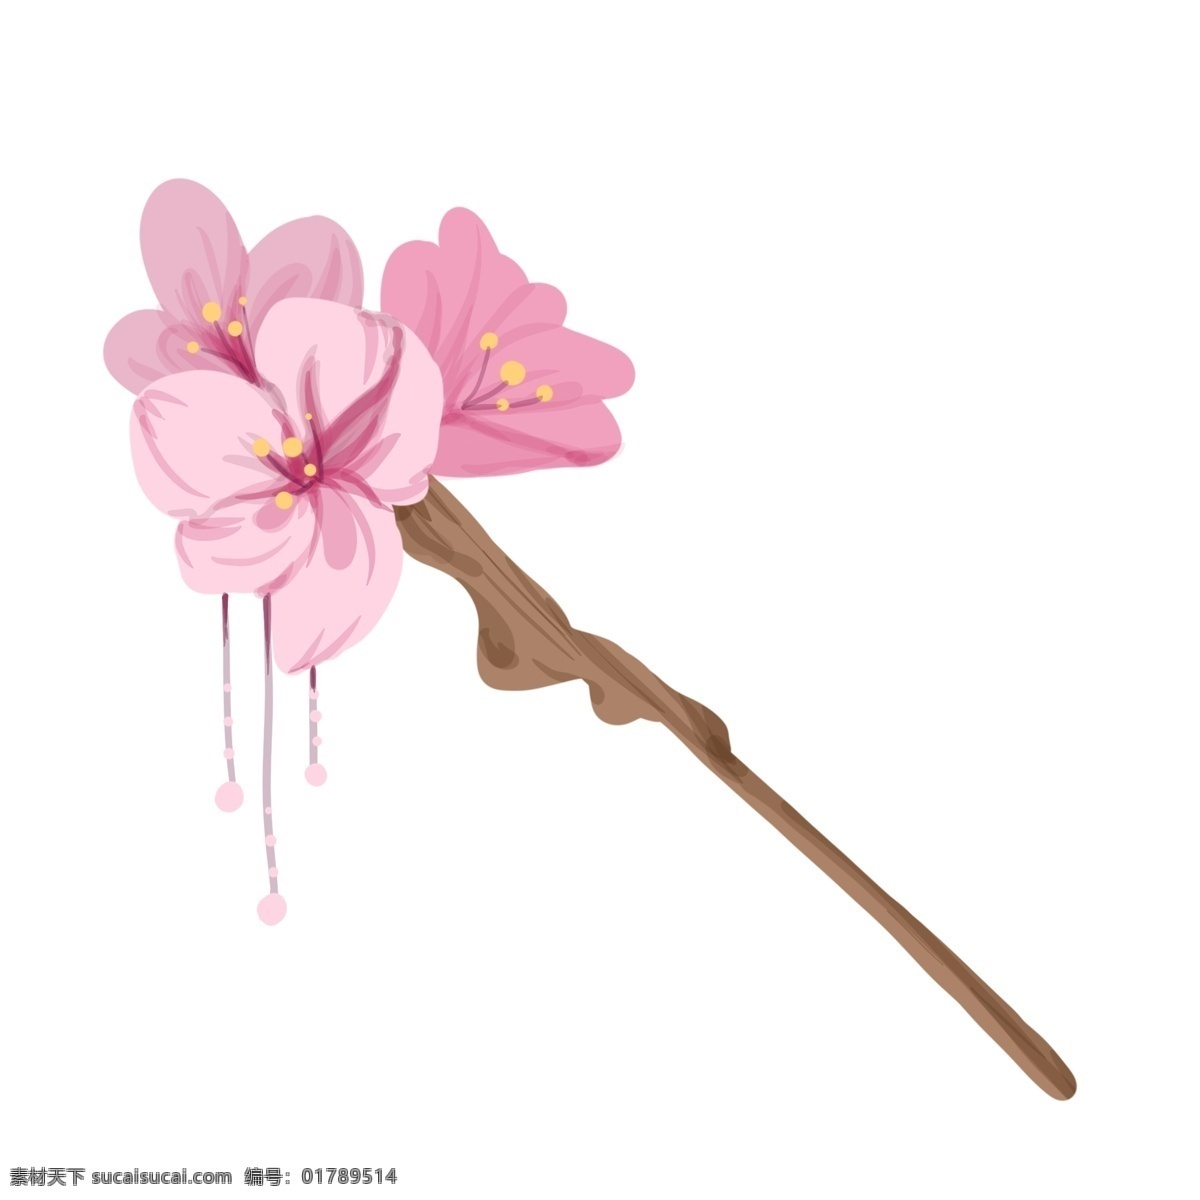 漂亮 粉色 樱花 发卡 漂亮的发卡 粉色发卡 樱花发卡 花朵发卡 粉色花朵发卡 簪子 樱花簪子 花朵